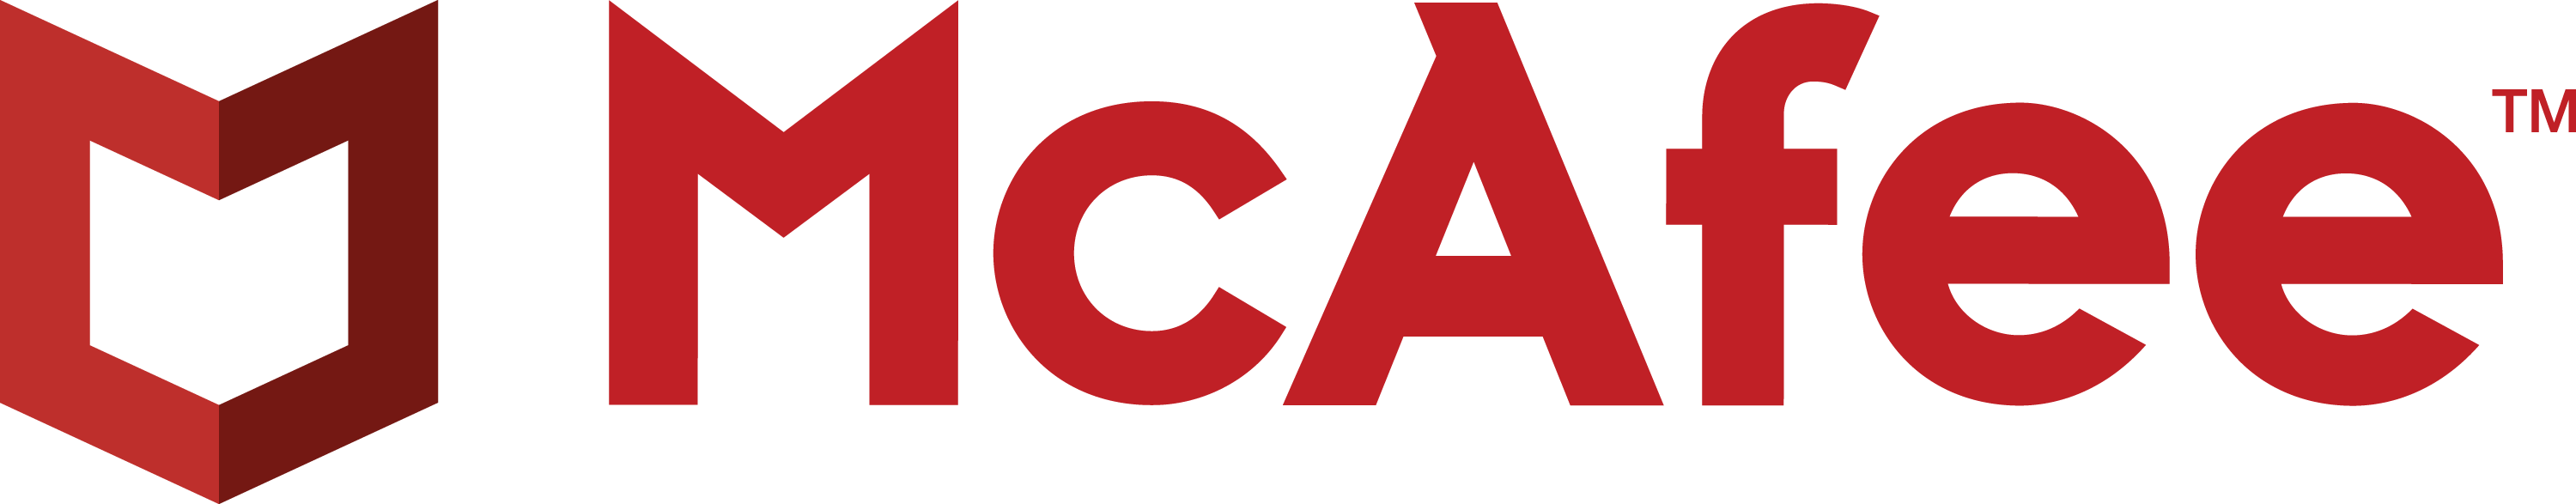 mcafee-horizontal-logo-no-tag-rgb-20170327